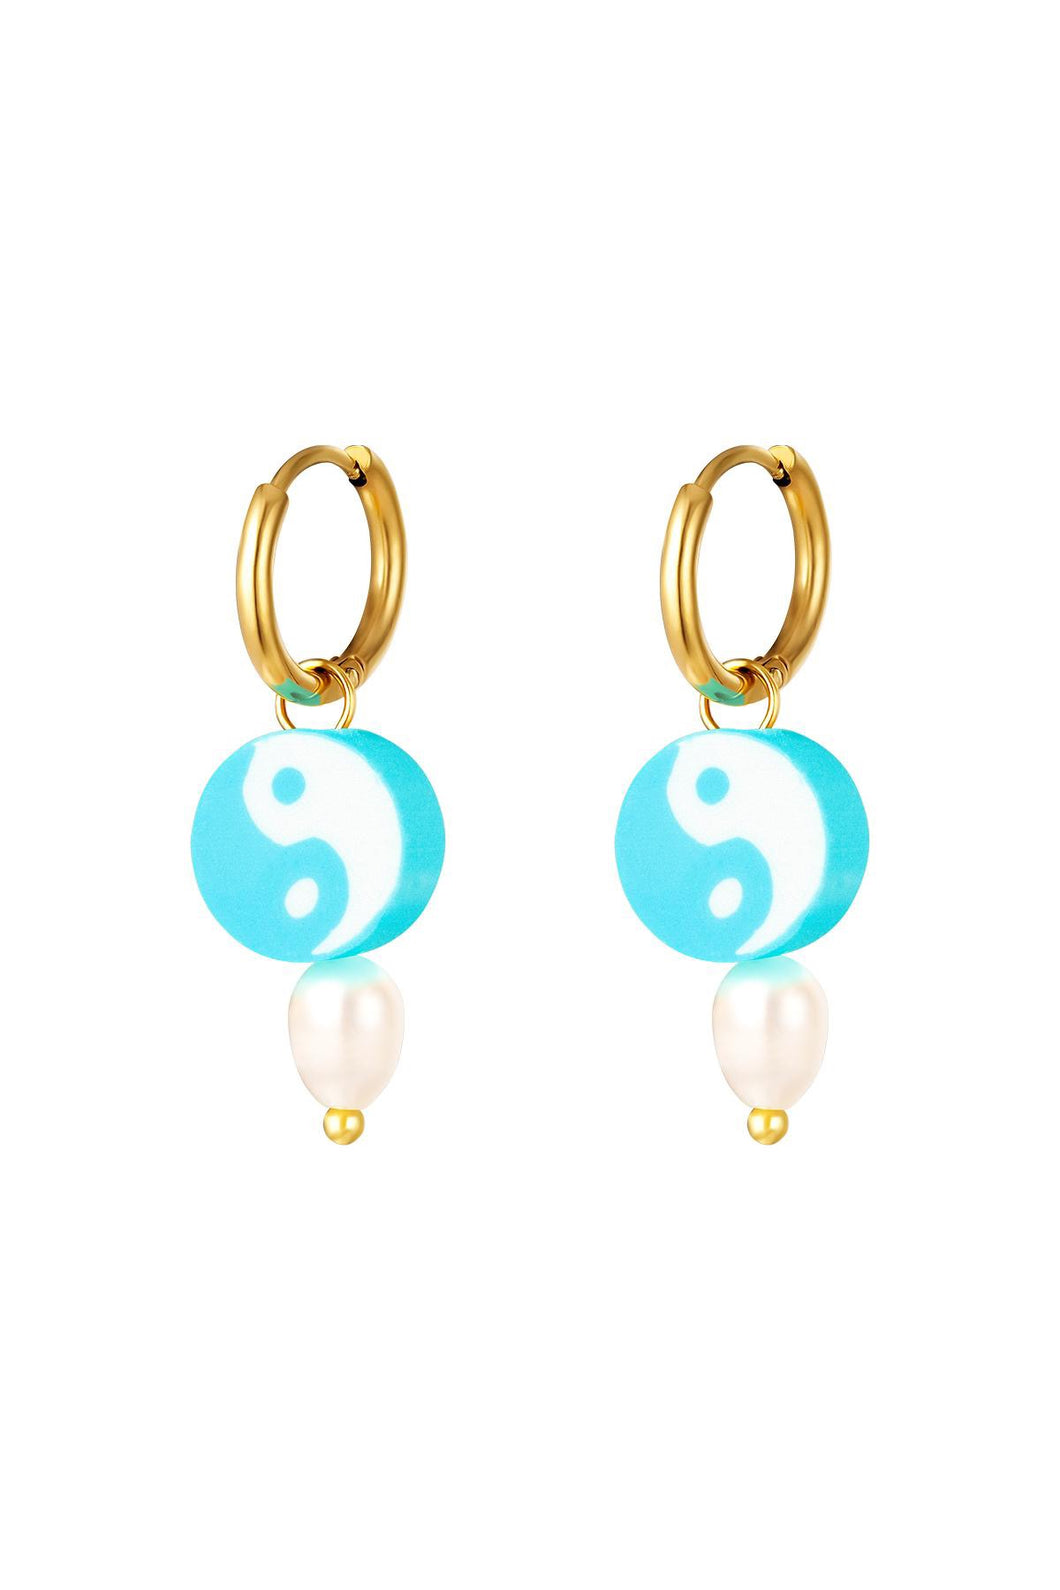 Yin Yang blue earrings - gold